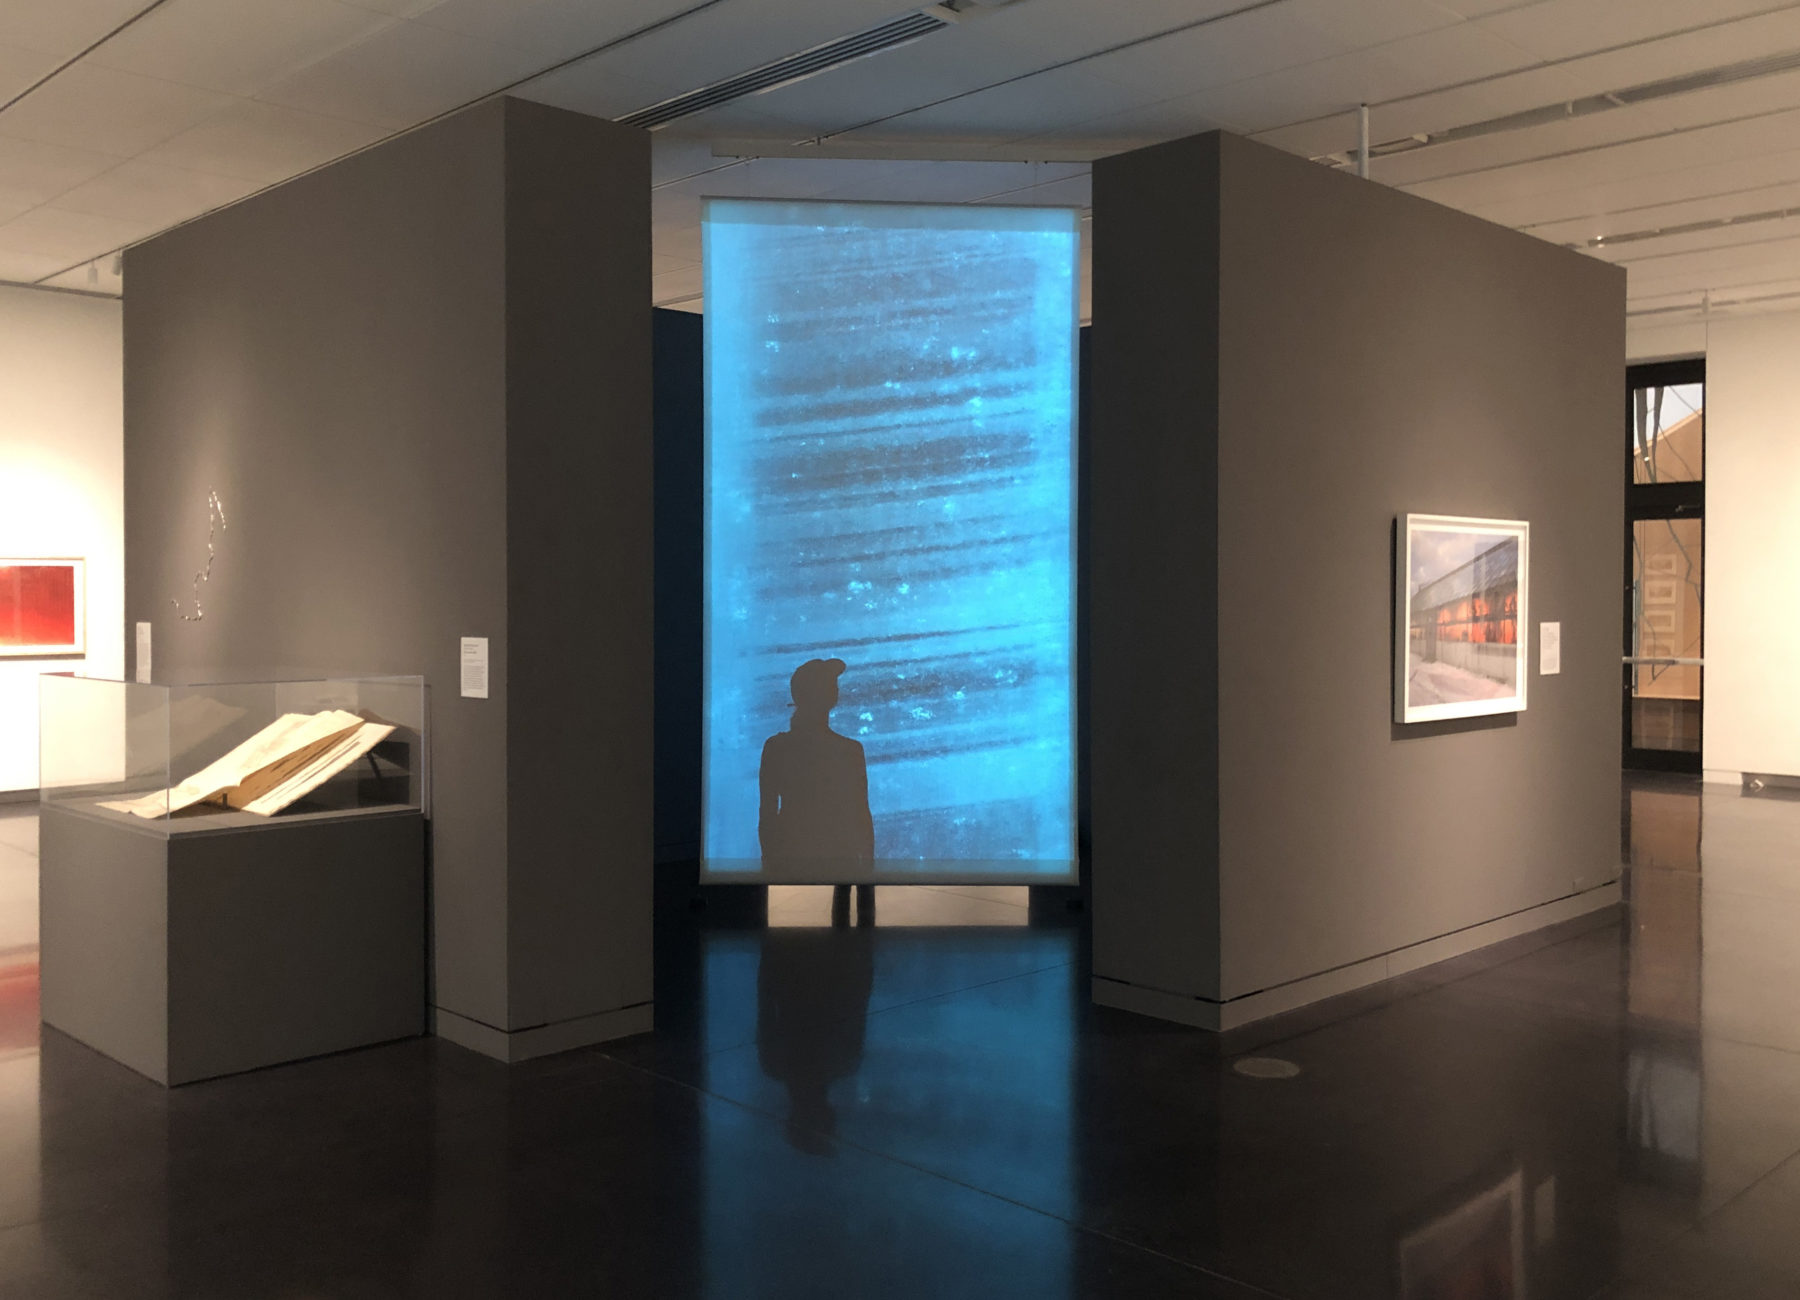 88 Cores
Documenting Change: Our Climate (Past Present Future)
CU University Art Museum Boulder 2019
